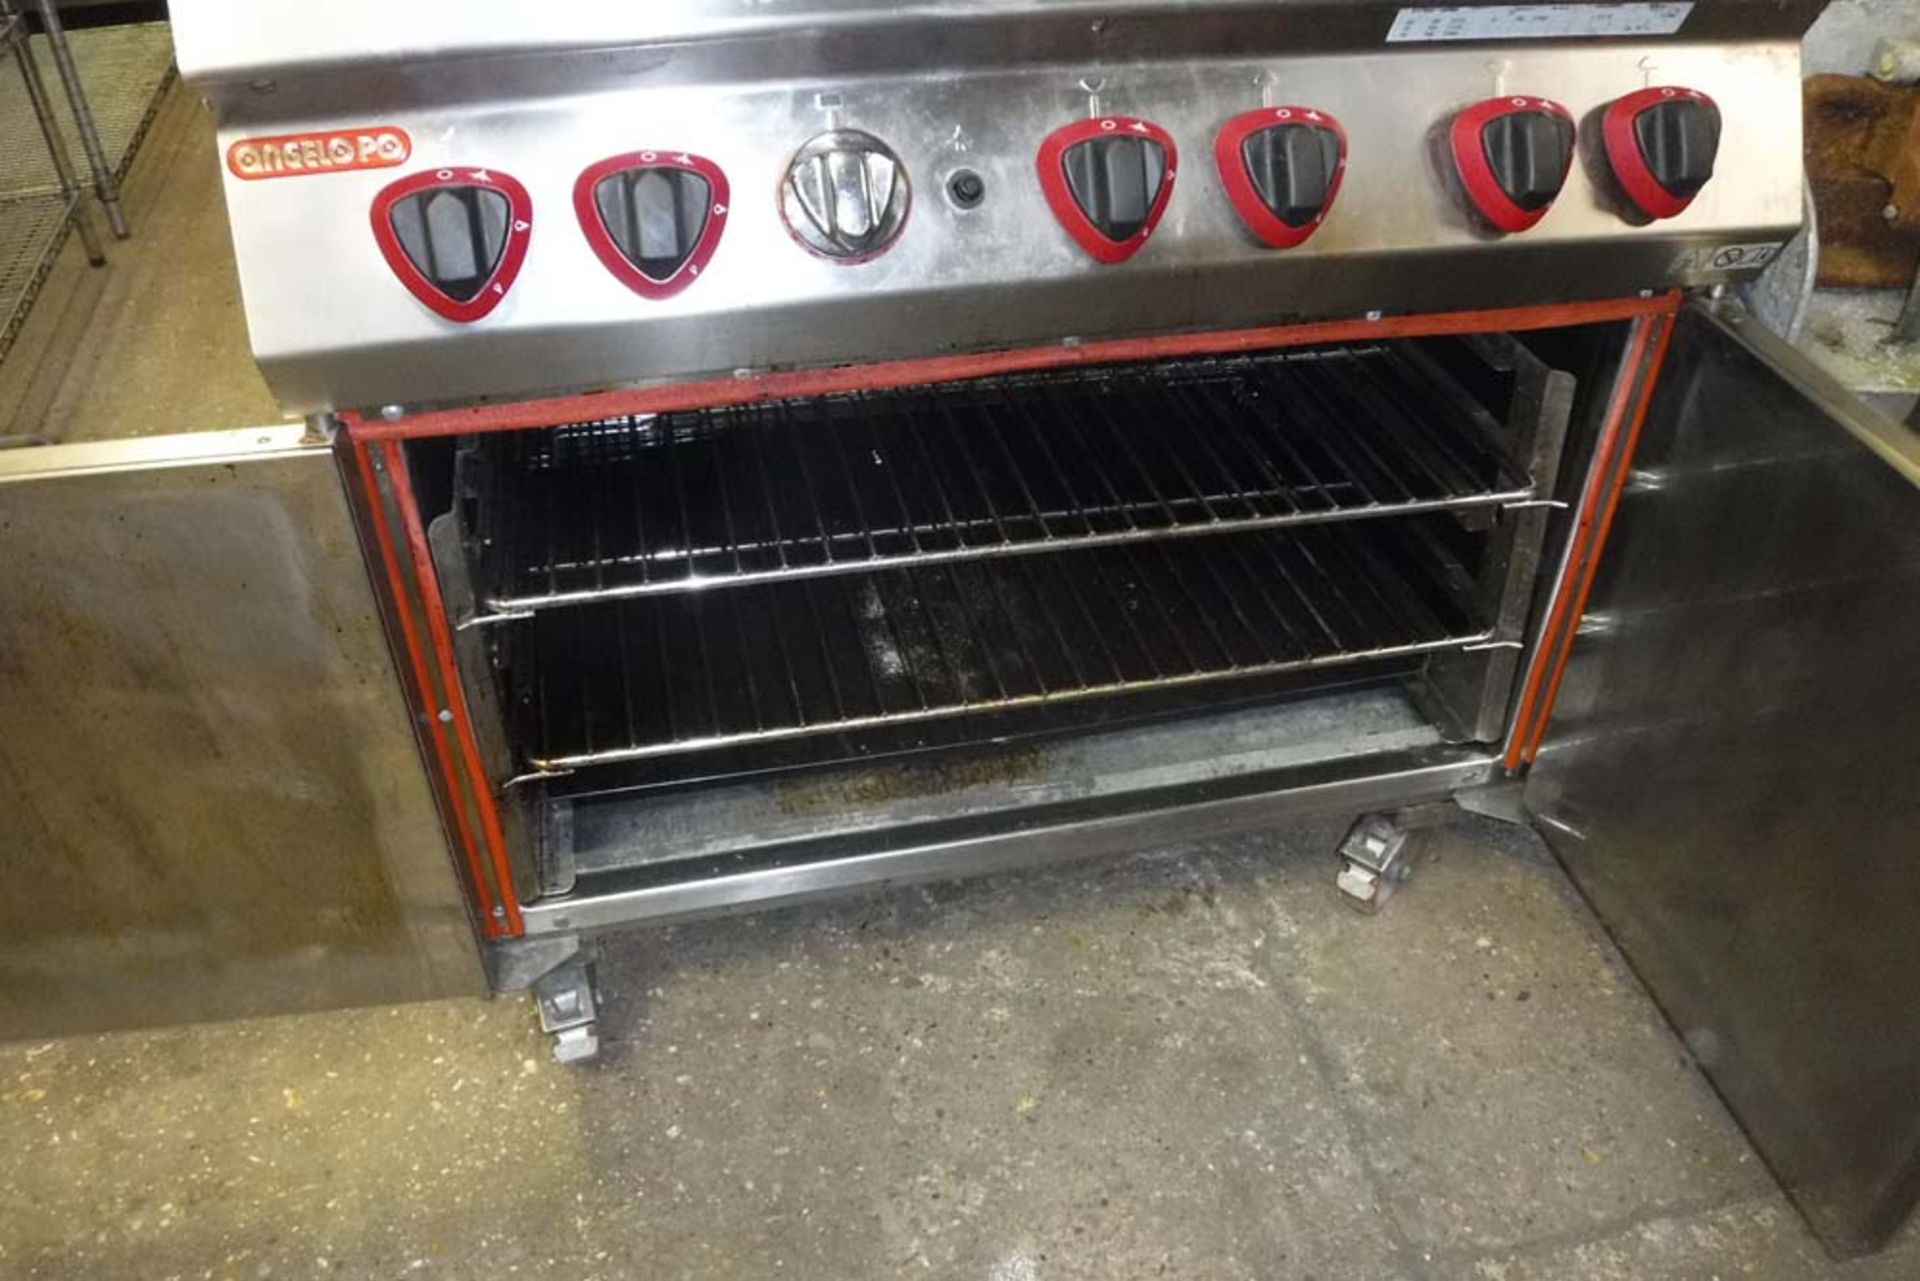 90cm gas Angelo Po 6 burner cooker with double door oven under on castors - Image 2 of 2